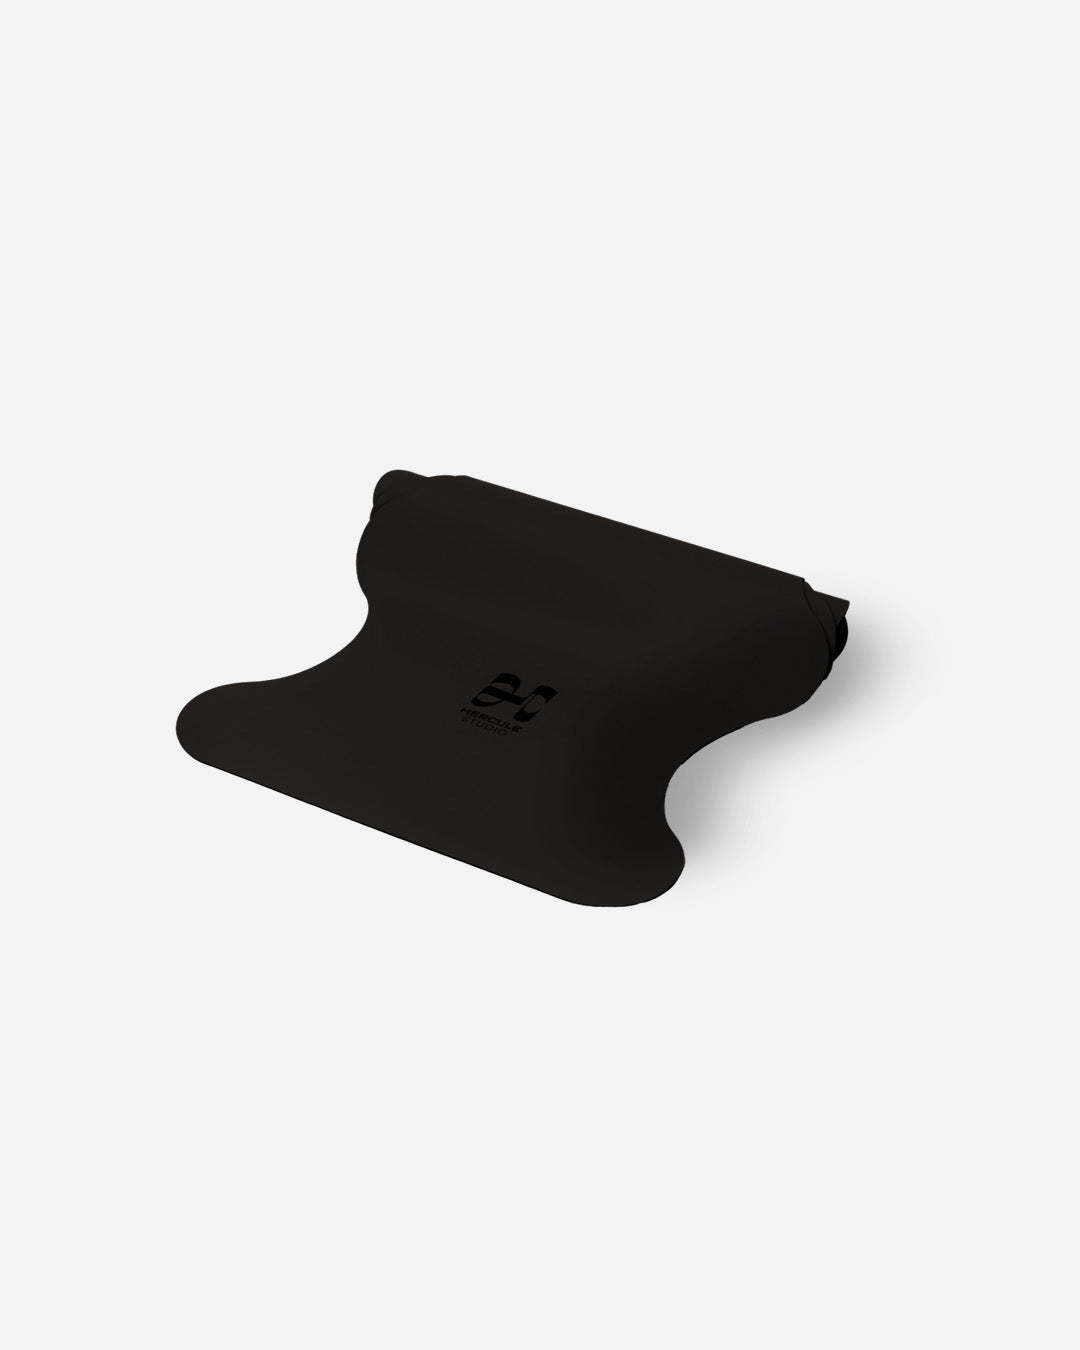 Tapis de sol pour le yoga de la marque hercule studio modèle mar couleur outrenoir packshot semi roulé